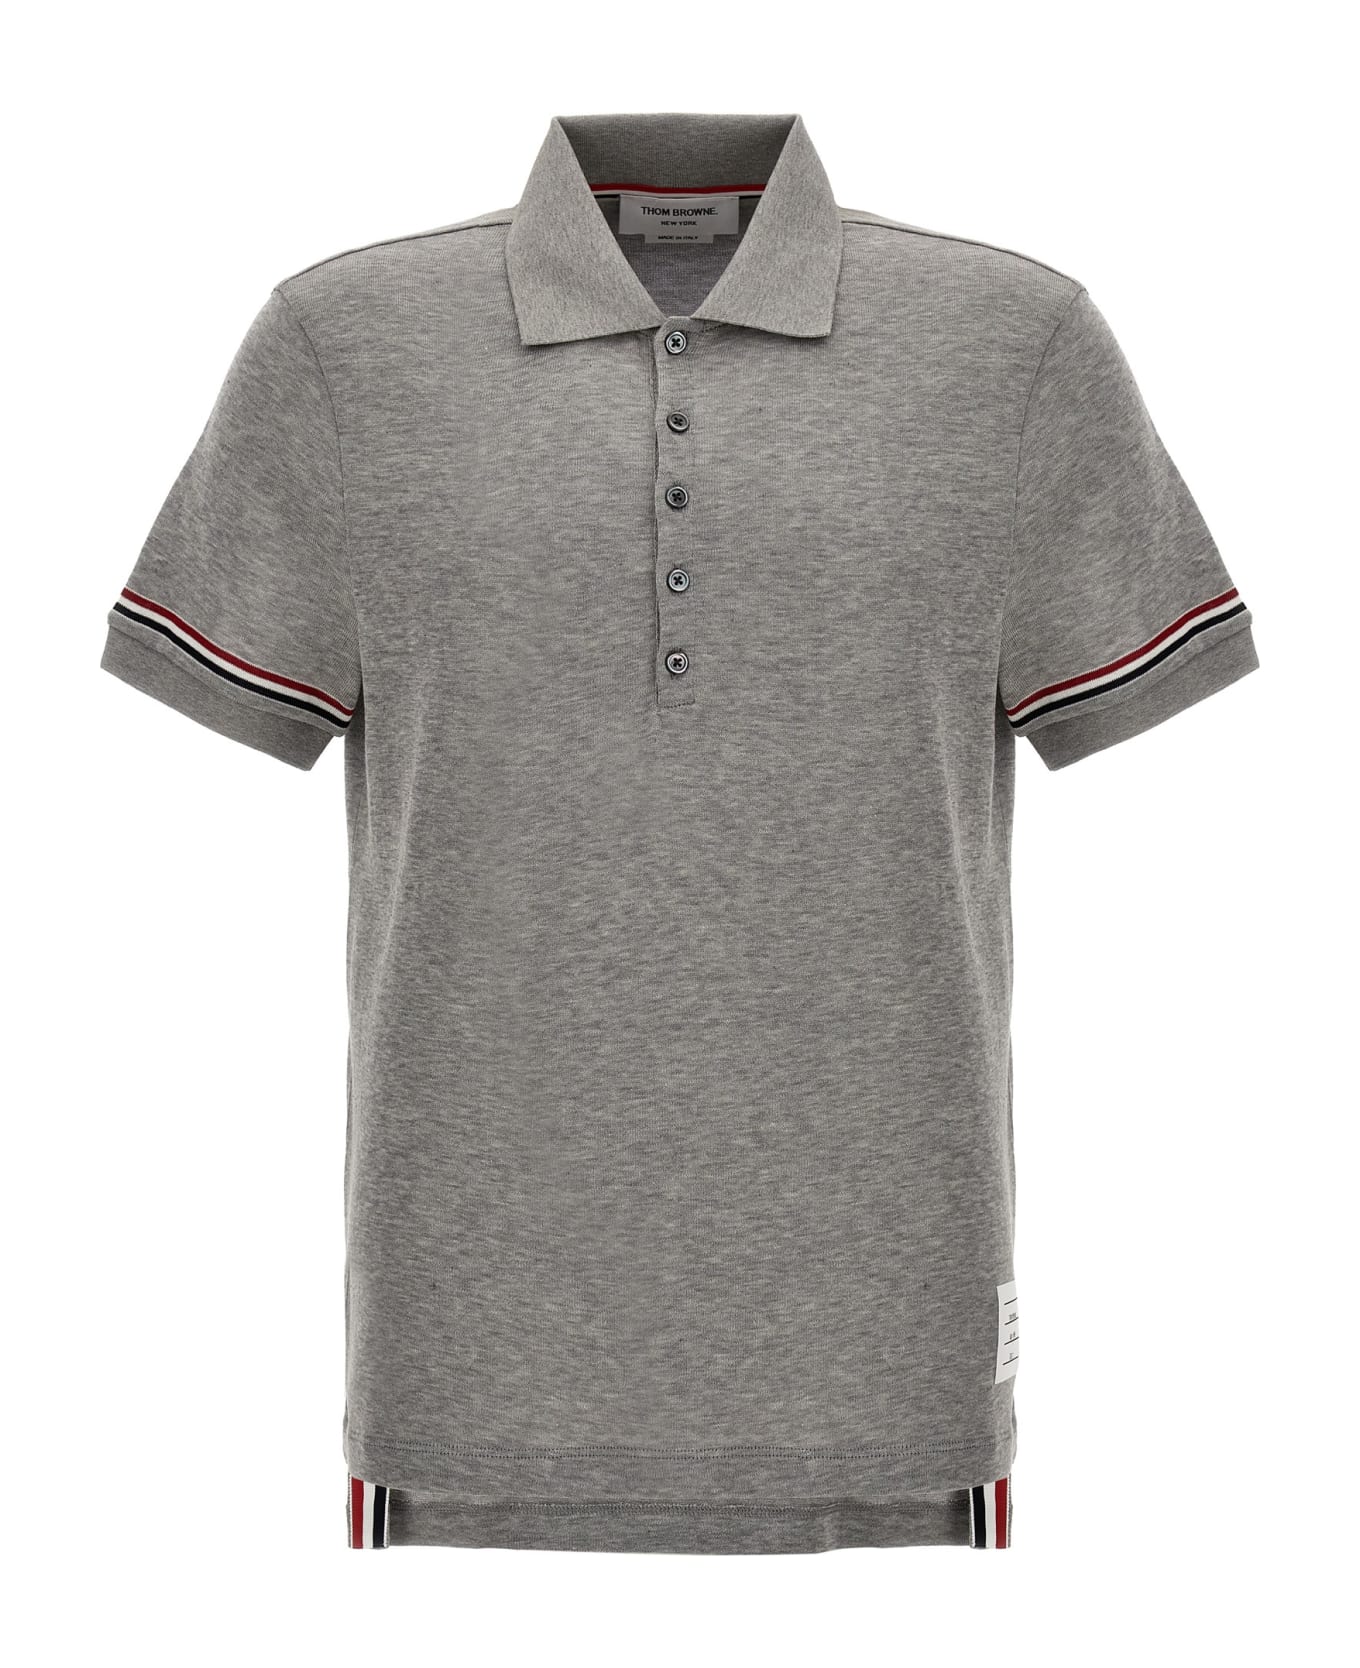 Thom Browne 'rwb' Polo Shirt - Med Grey